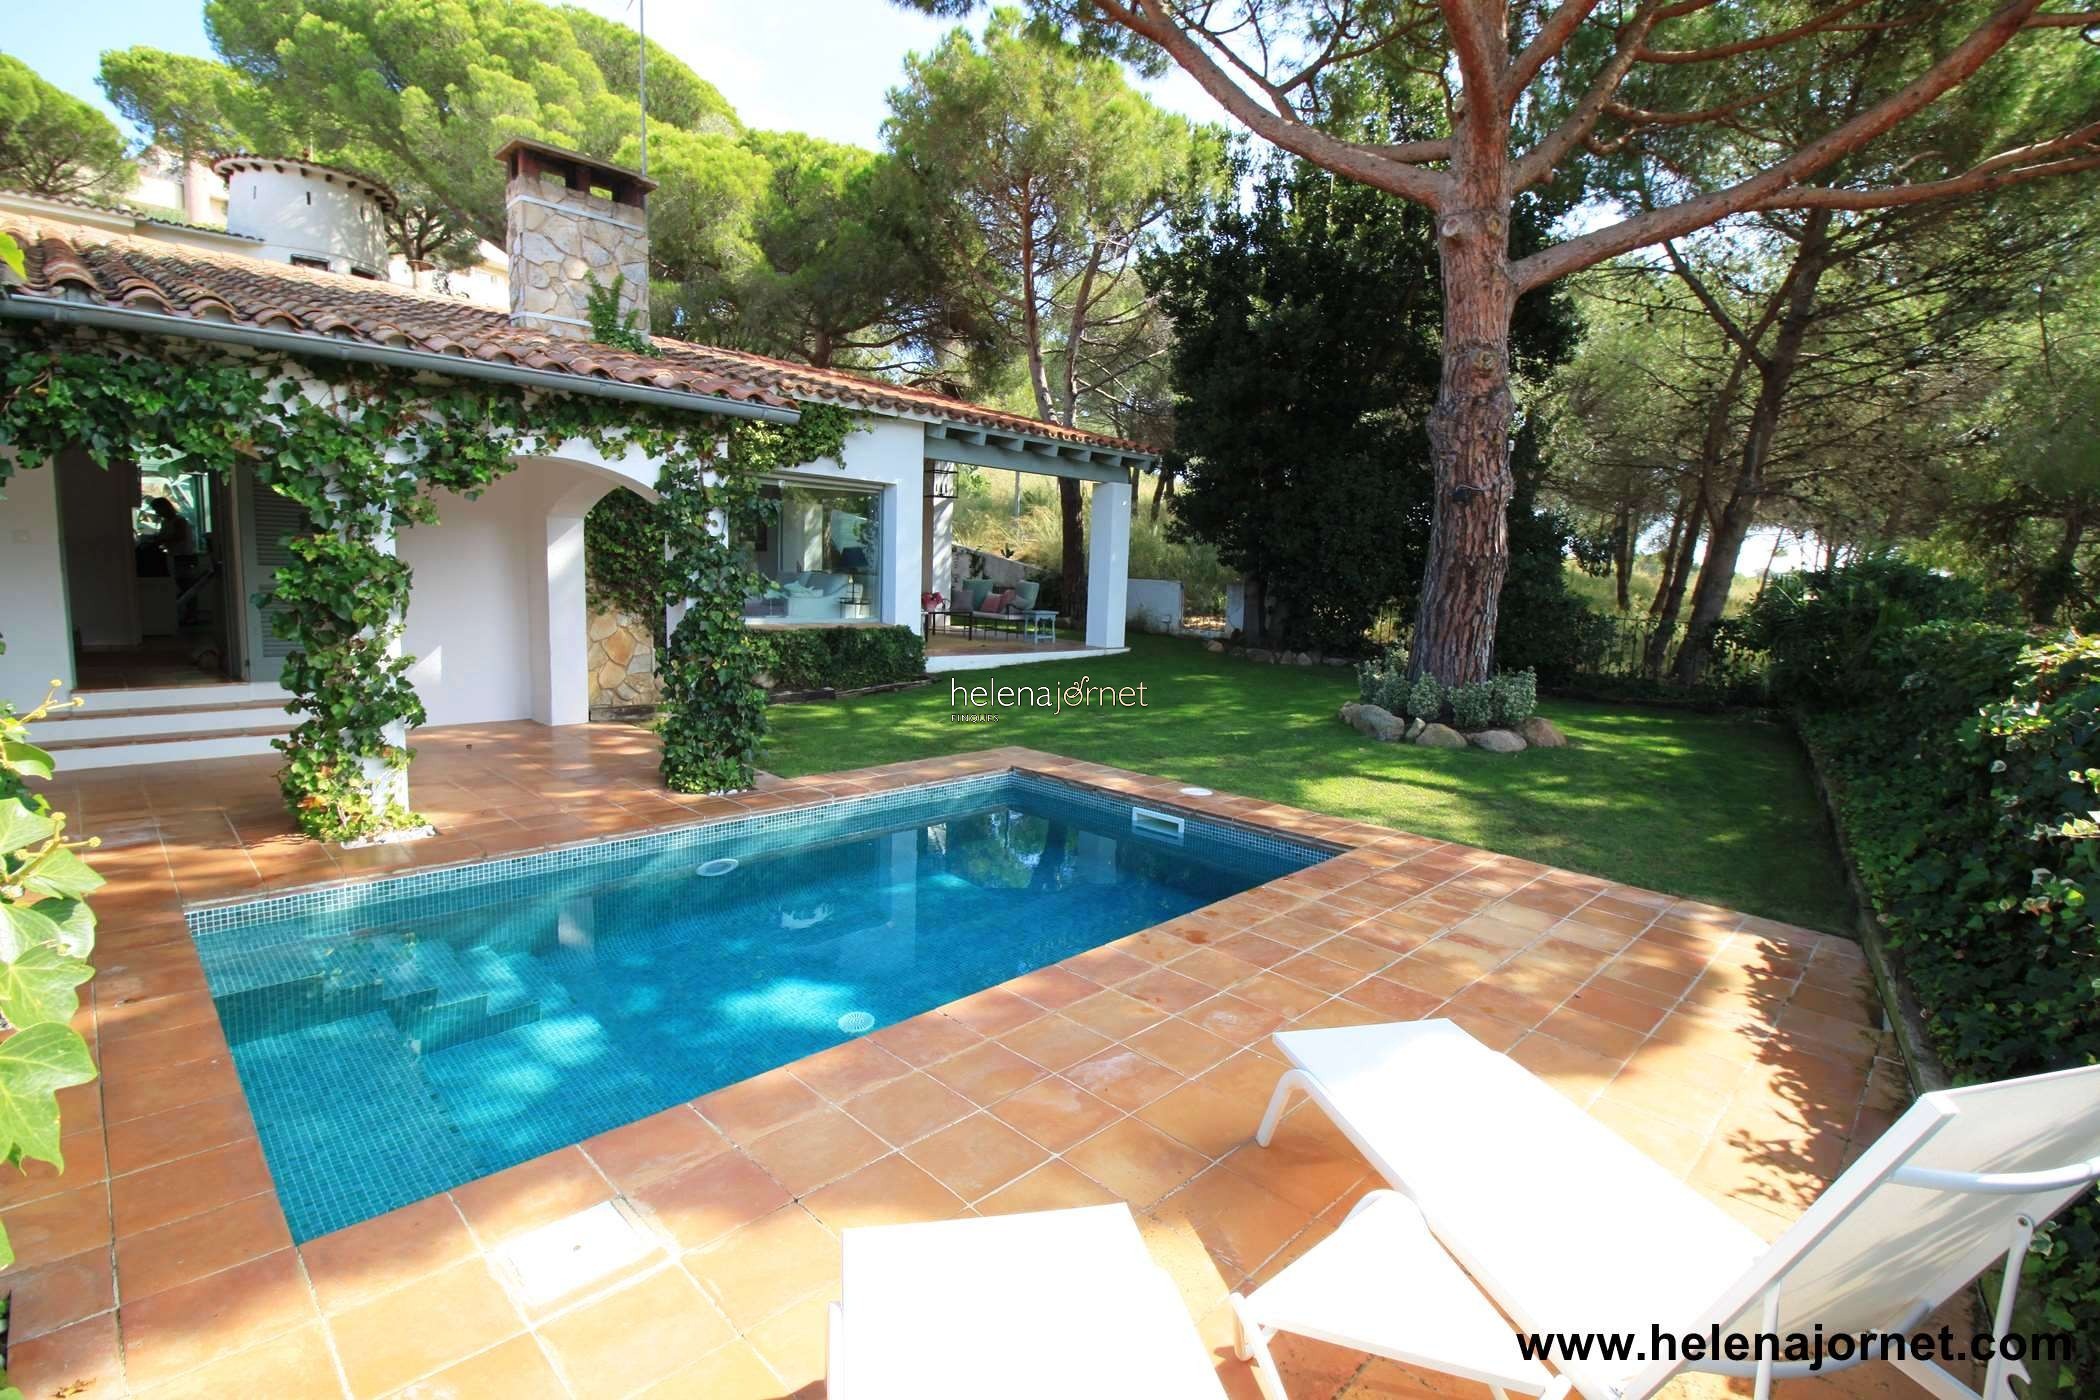 Fantàstica casa estiuenca a S'Agaró amb piscina i jardí privats. - 70060 Casa verda